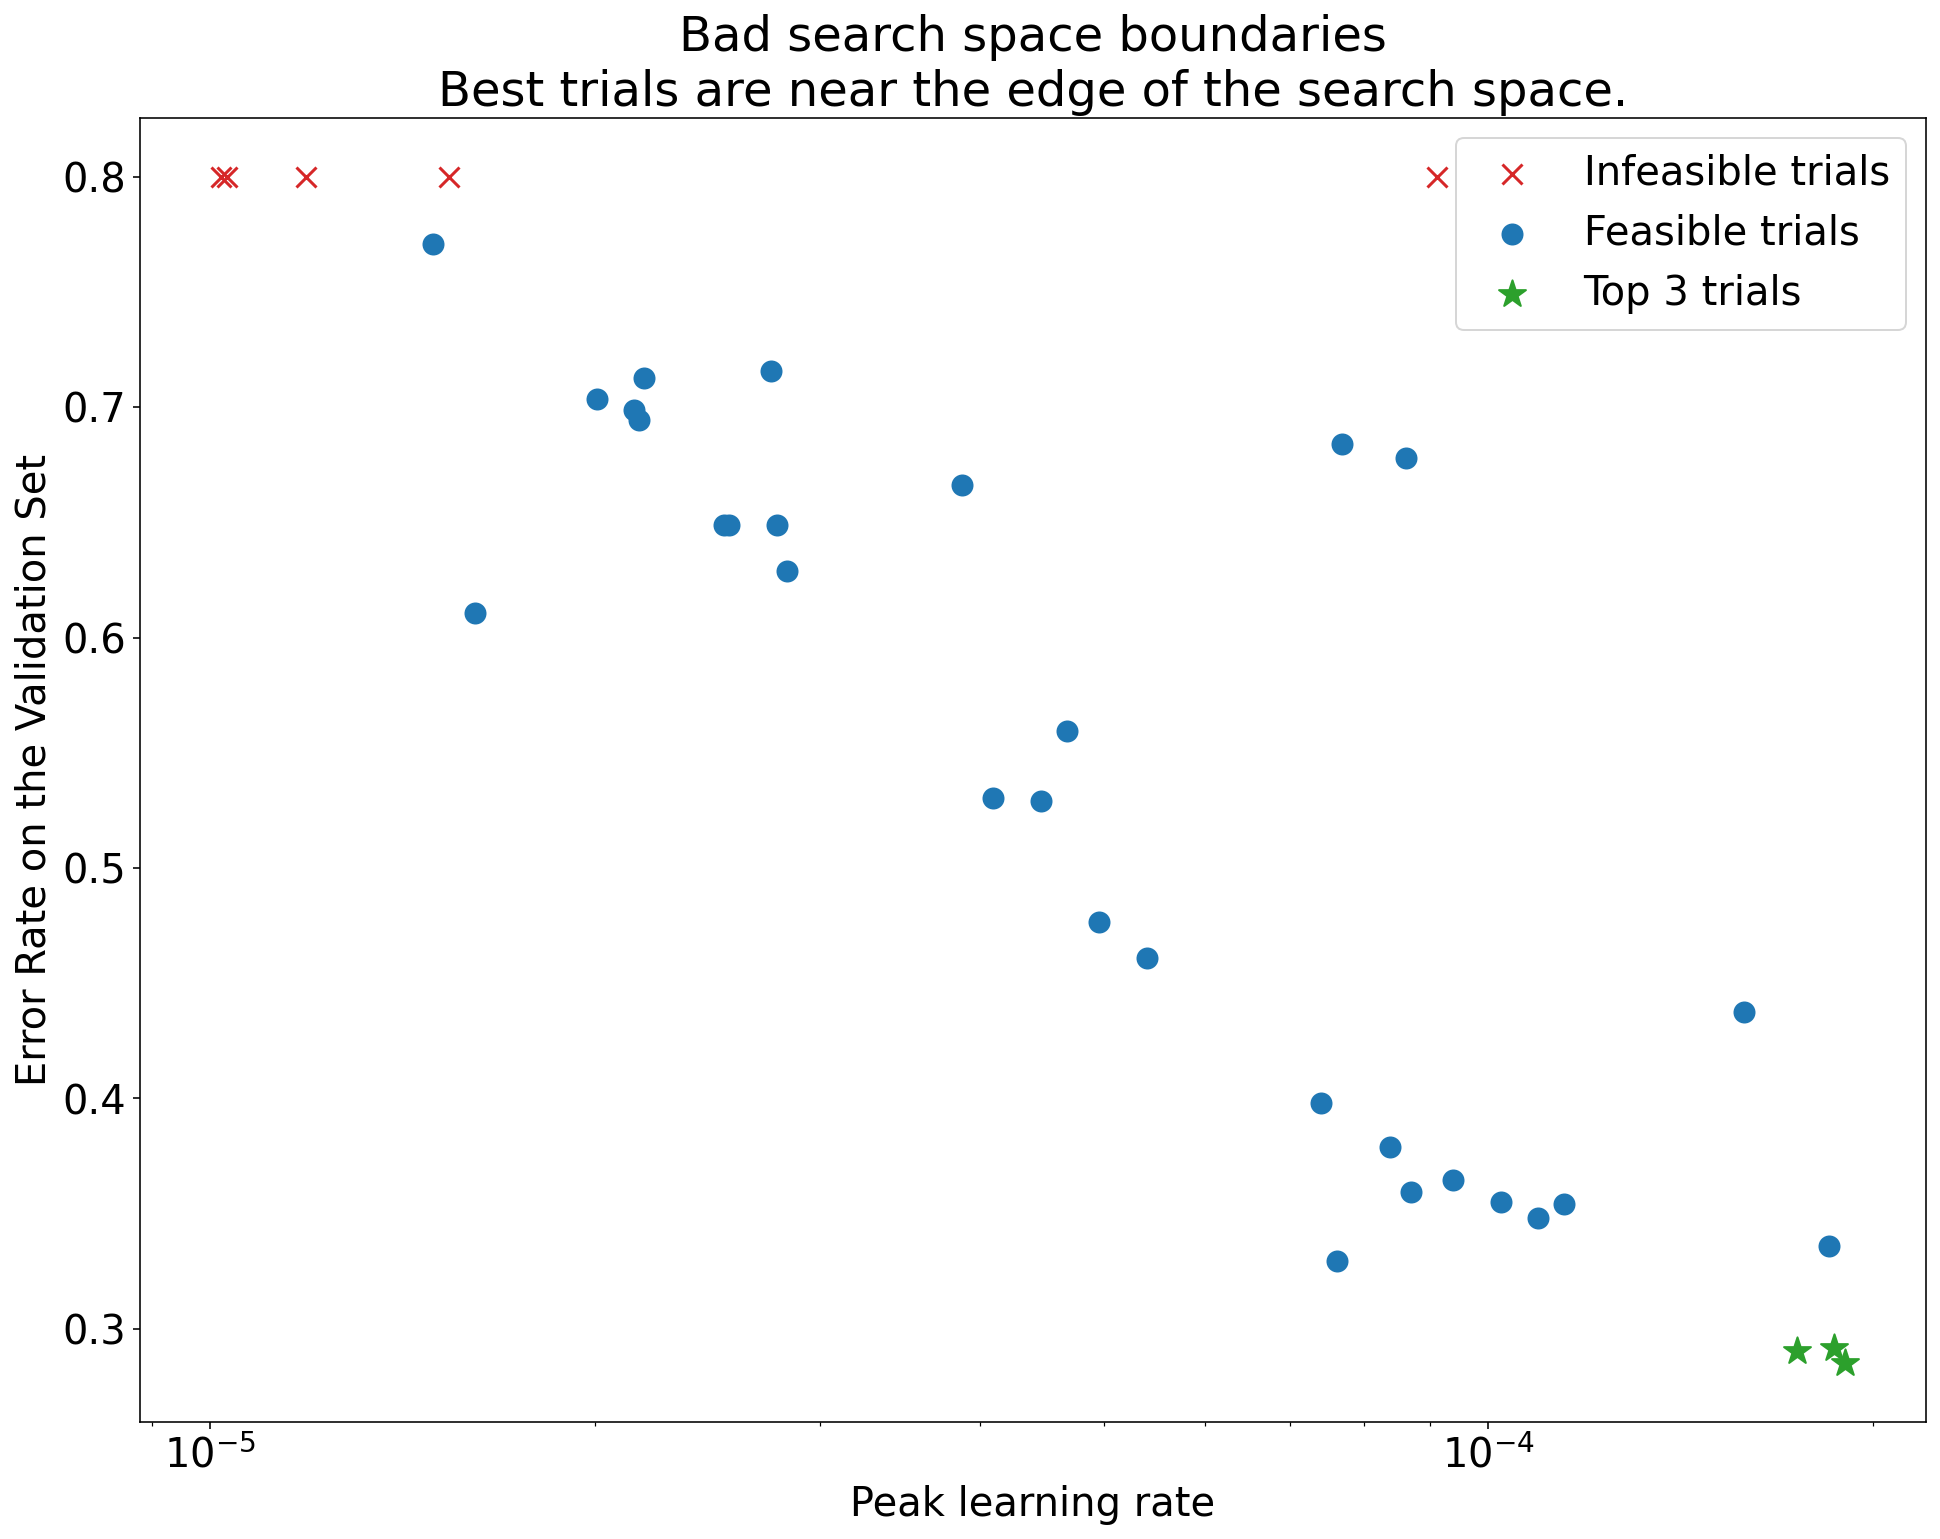 Gráfico da taxa de erro no conjunto de validação (eixo y) x
 Pico de taxa de aprendizado (eixo x) demonstrando limites incorretos de espaço de pesquisa. Neste gráfico, as melhores avaliações (taxas de erro mais baixas) estão próximas da margem do espaço de pesquisa, onde a taxa de aprendizado máxima é mais alta.